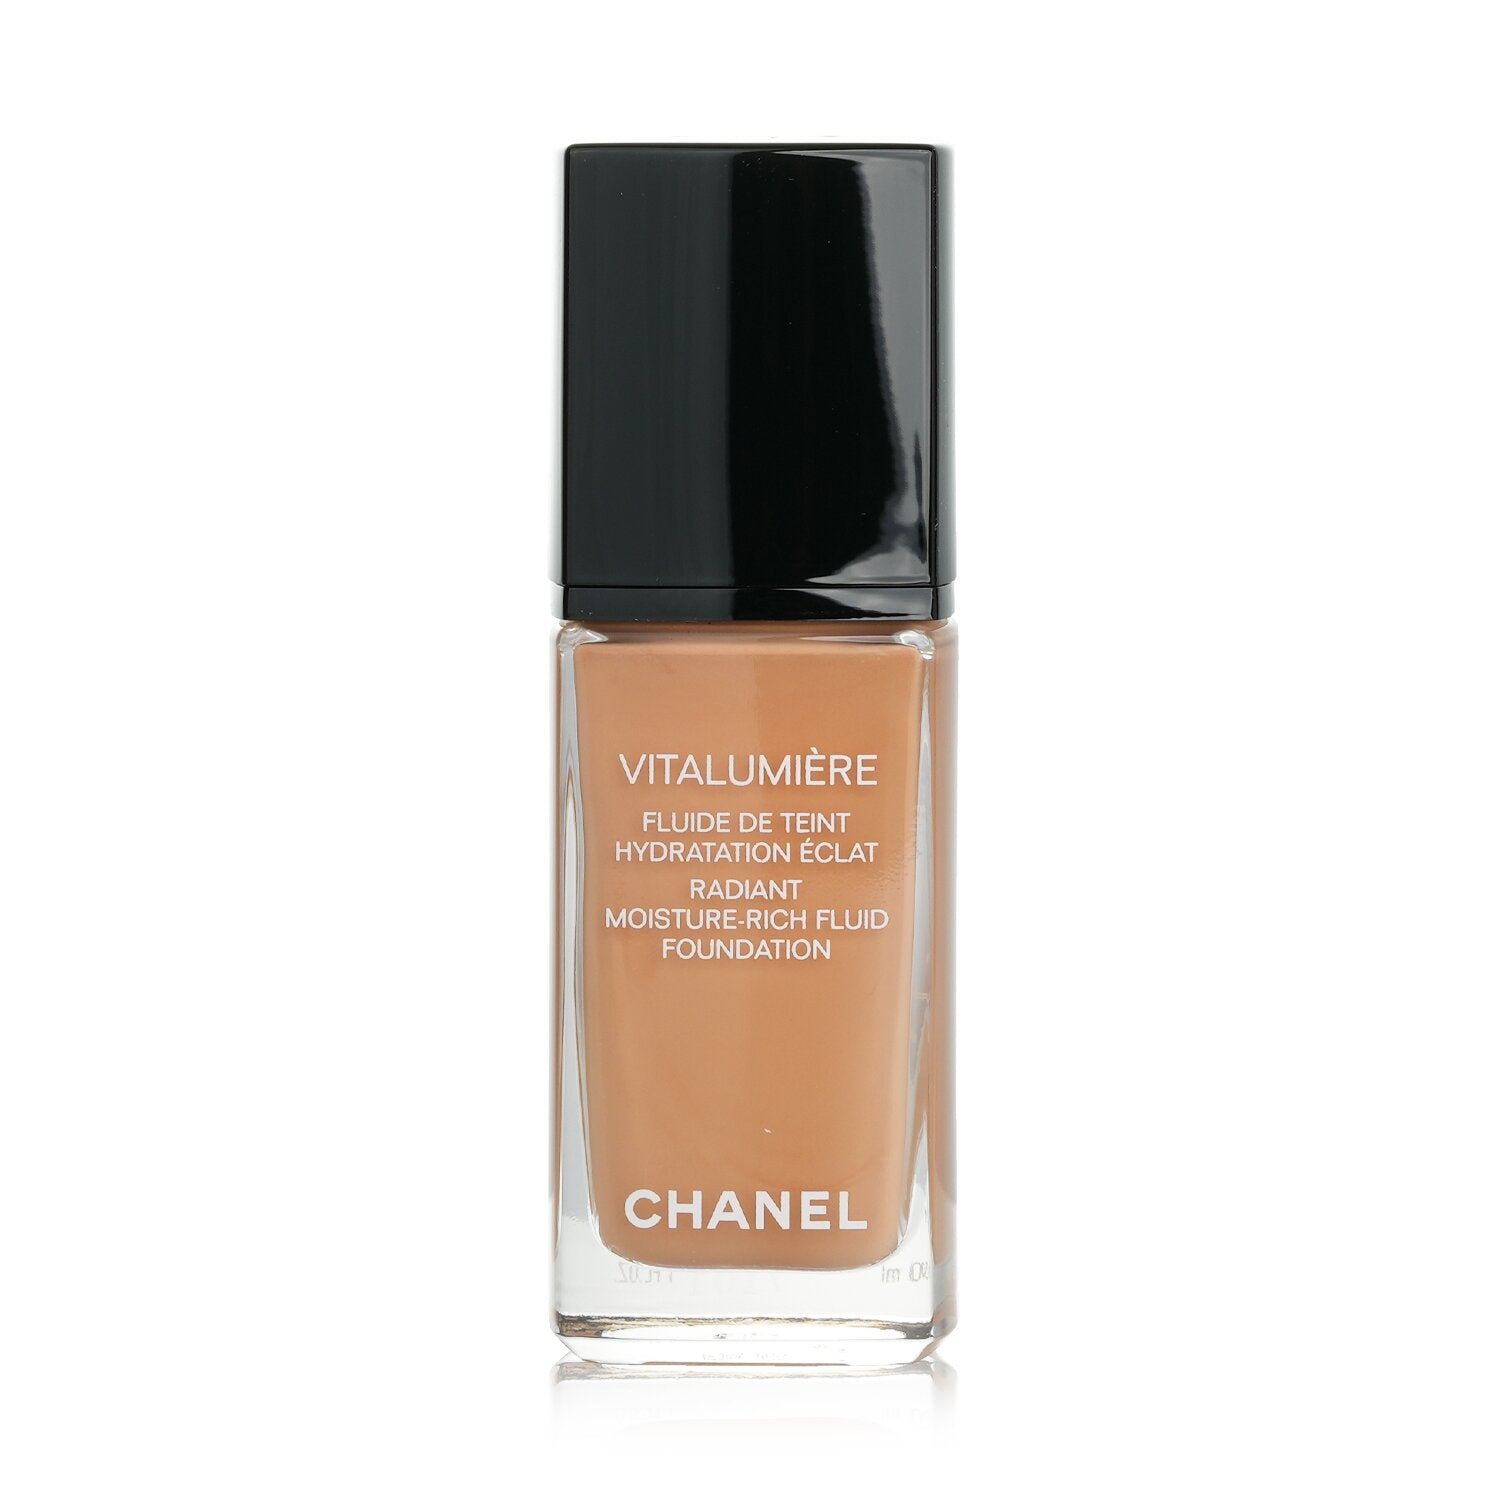 Chanel Vitalumière Moisture-Rich Radiance Sunscreen Fluid Makeup